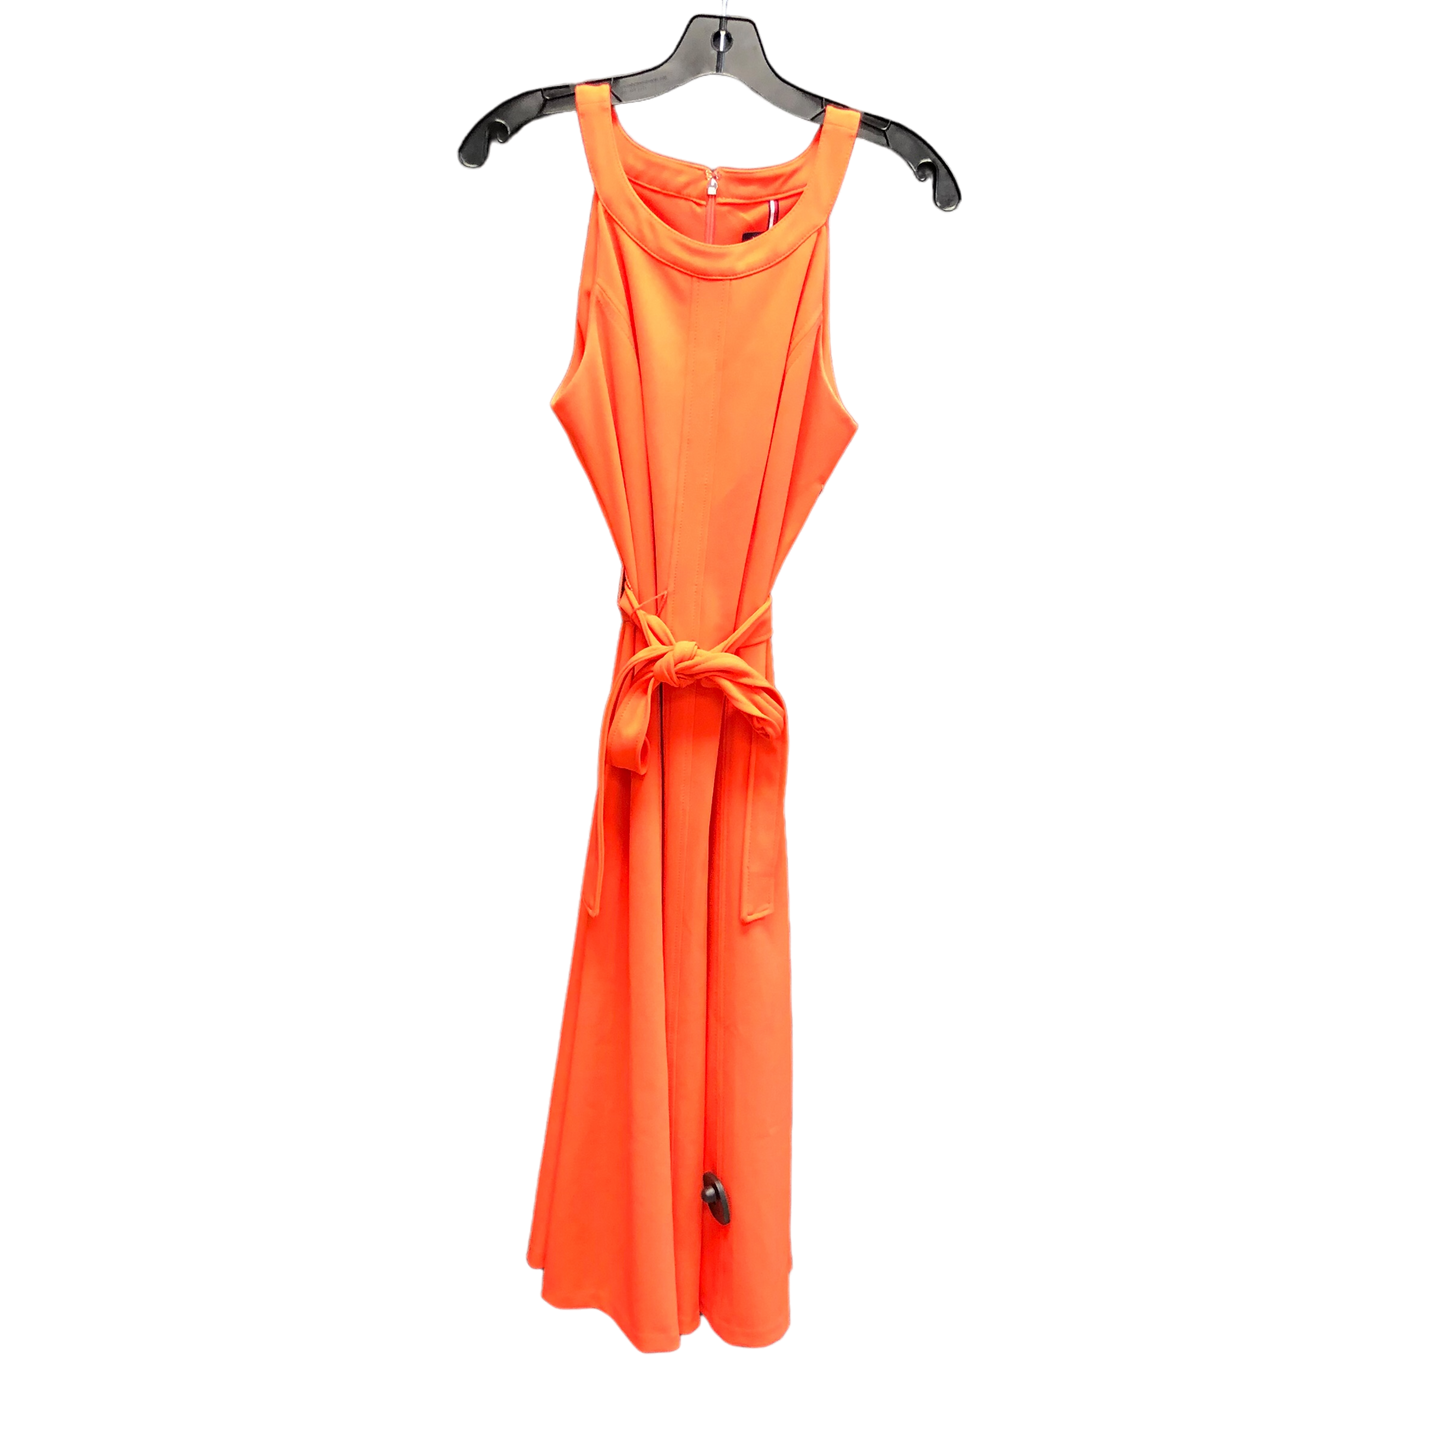 Orange Dress Casual Short Tommy Hilfiger, Size 8